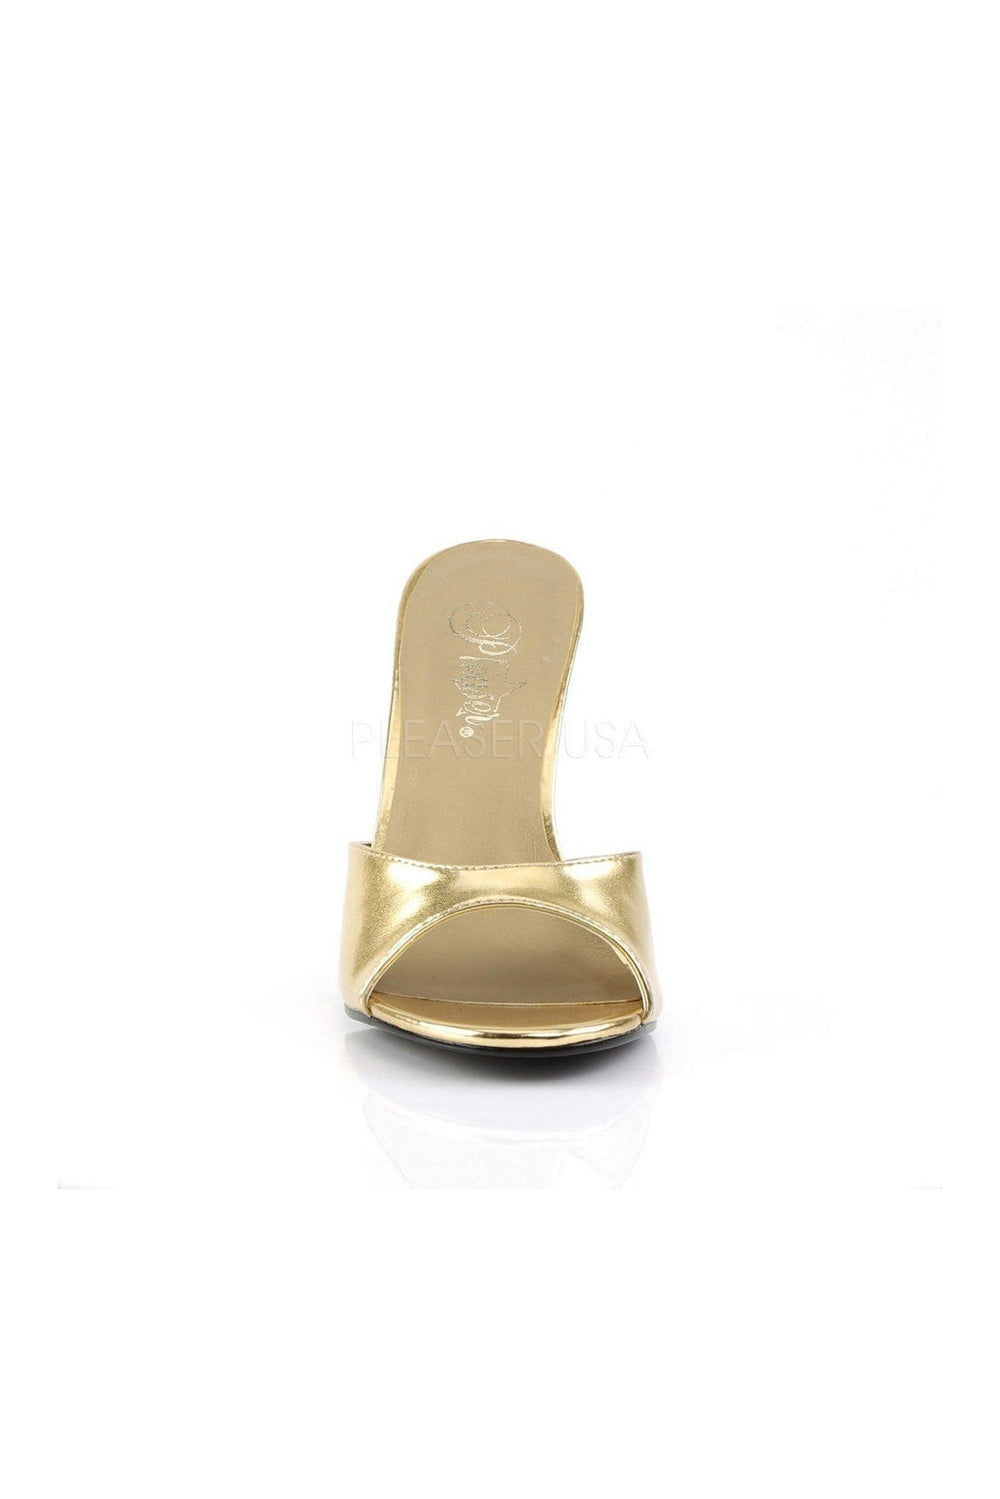 CLASSIQUE-01 Slide | Gold Faux Leather-Pleaser-Slides-SEXYSHOES.COM